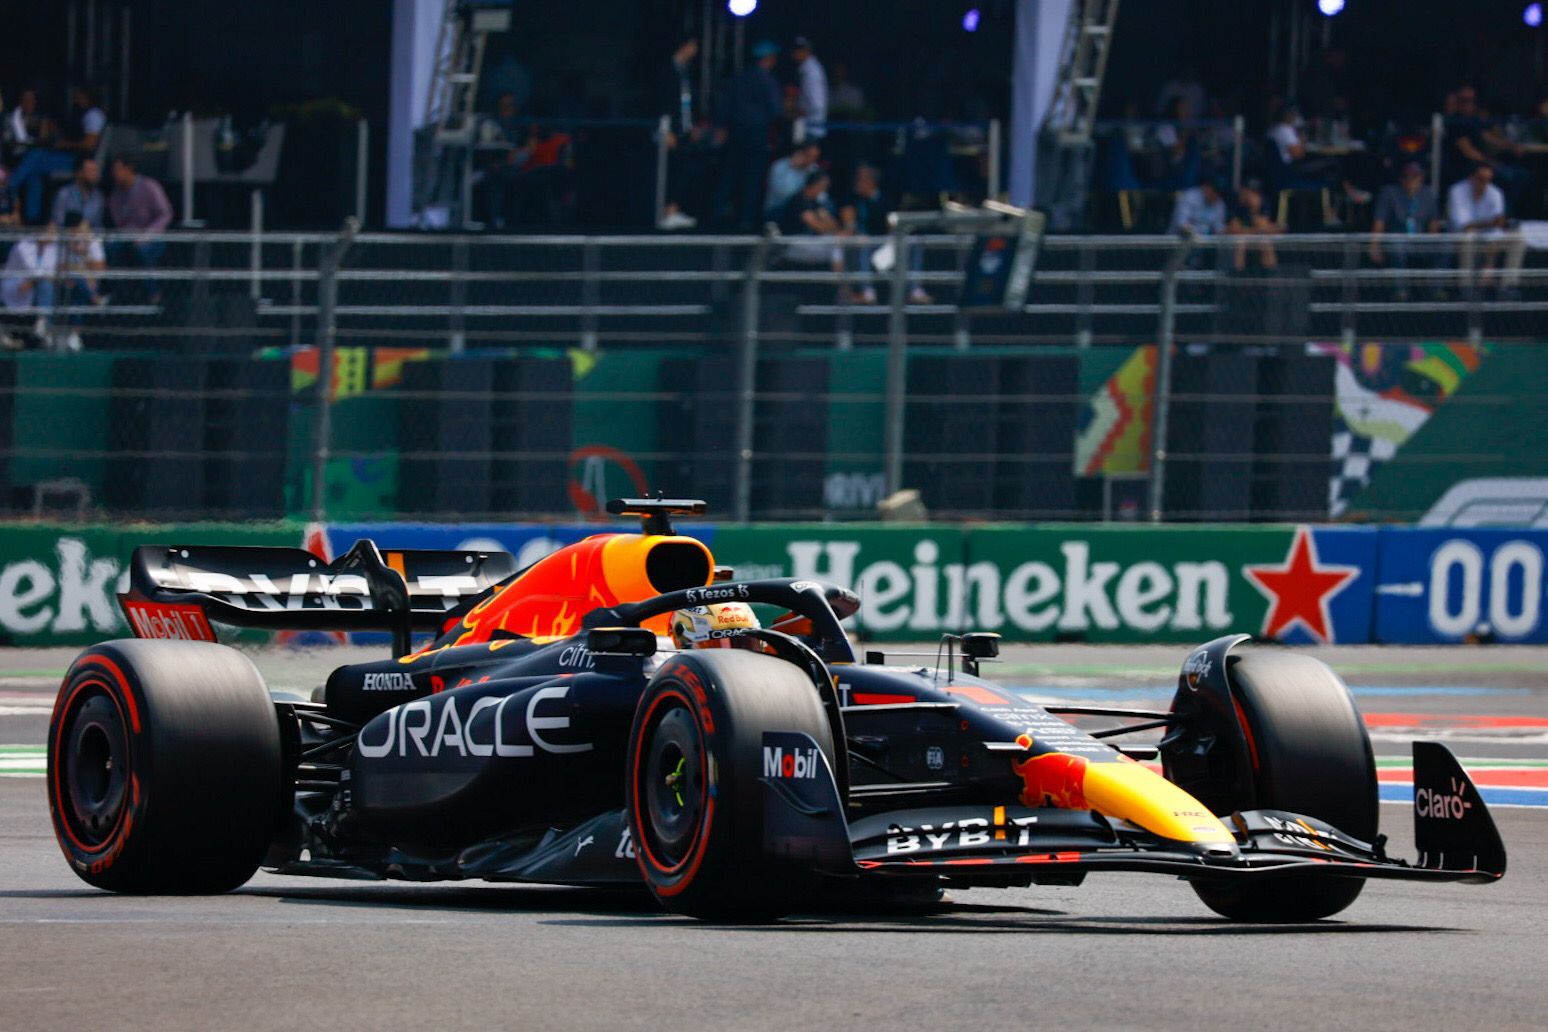 'Checo' Pérez saldrá cuarto en el Gran Premio de México; Max Verstappen consigue pole position